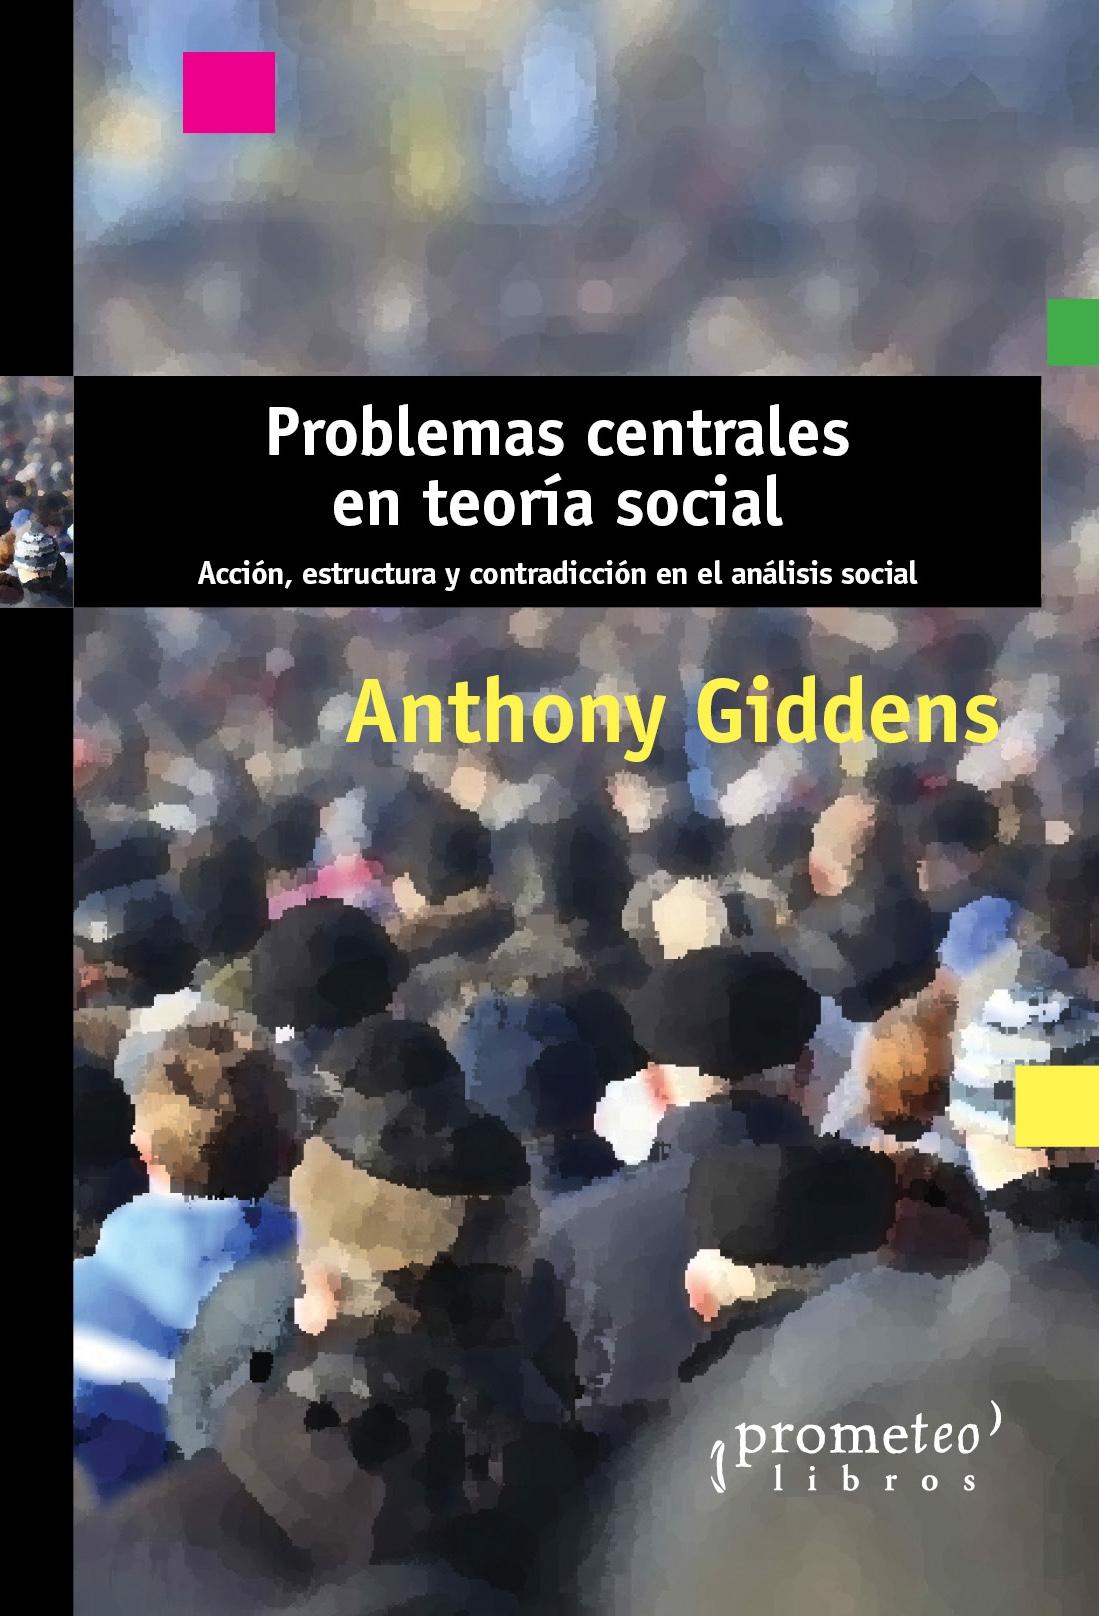 Problemas centrales en teoría social "Acción, estructura y contradicción en el análisis social". 